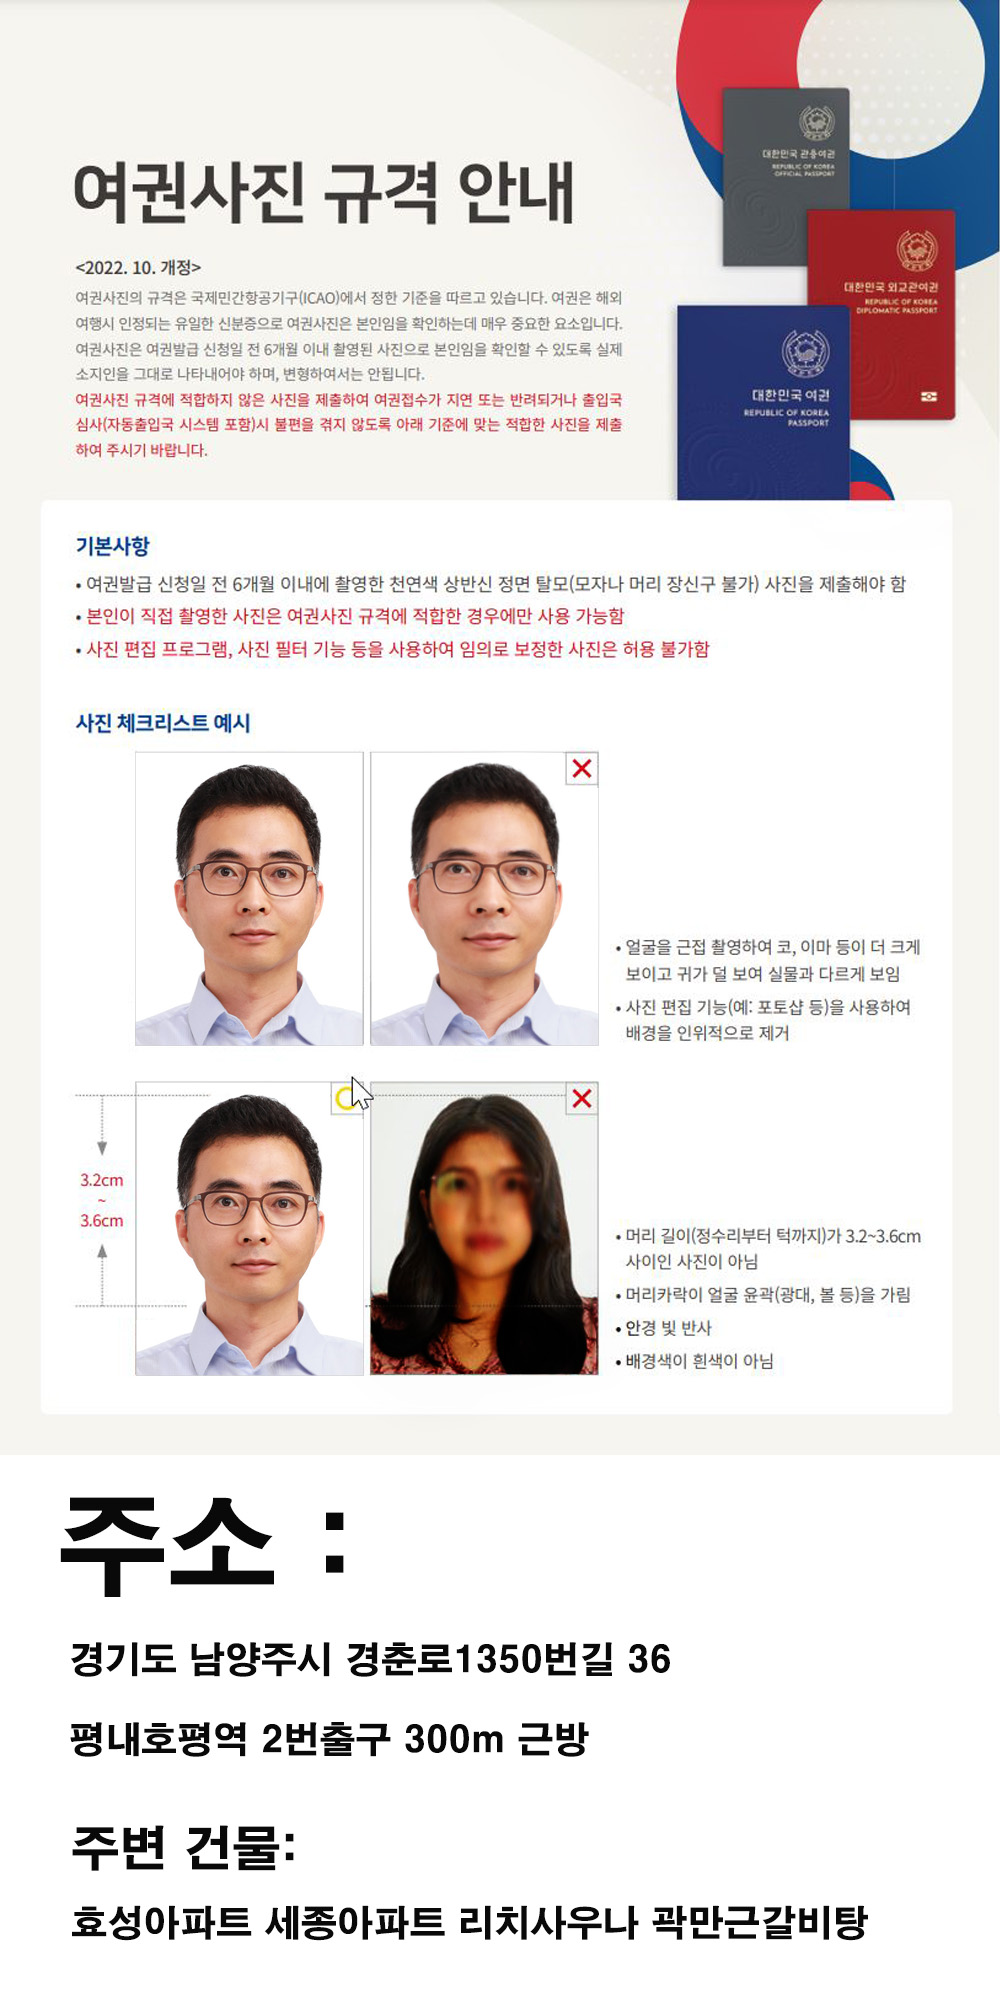 여권사진규격 평내호평사진관